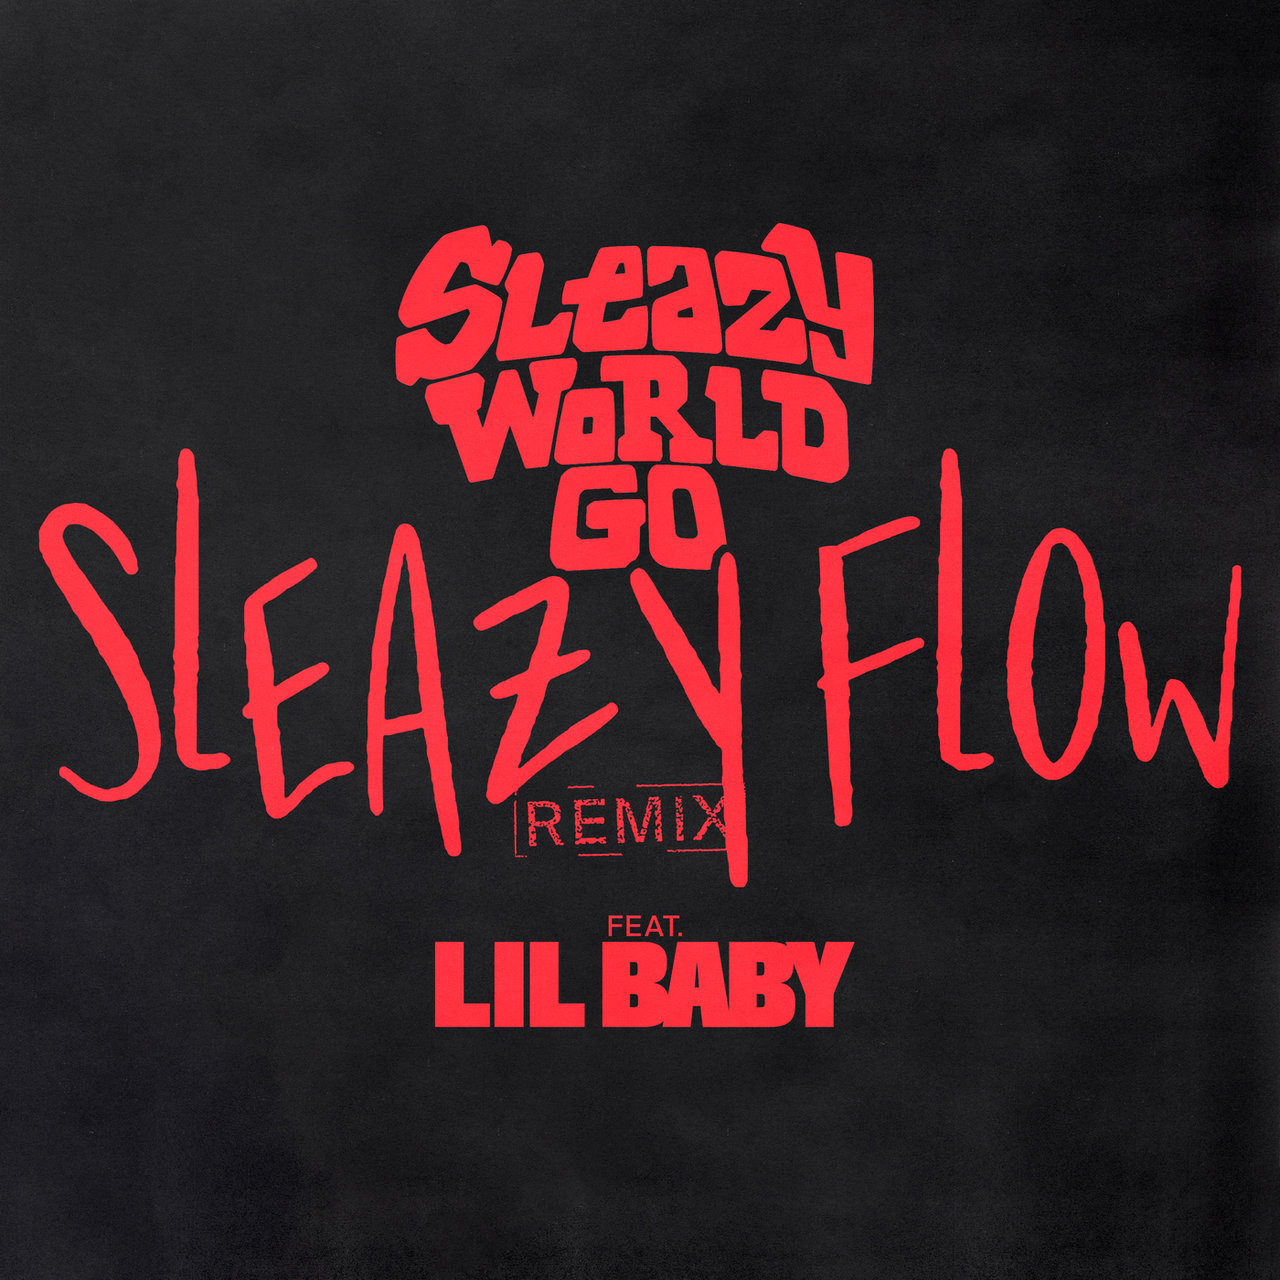 SleazyWorld Go Lil Baby 'Sleazy Flow' Remix